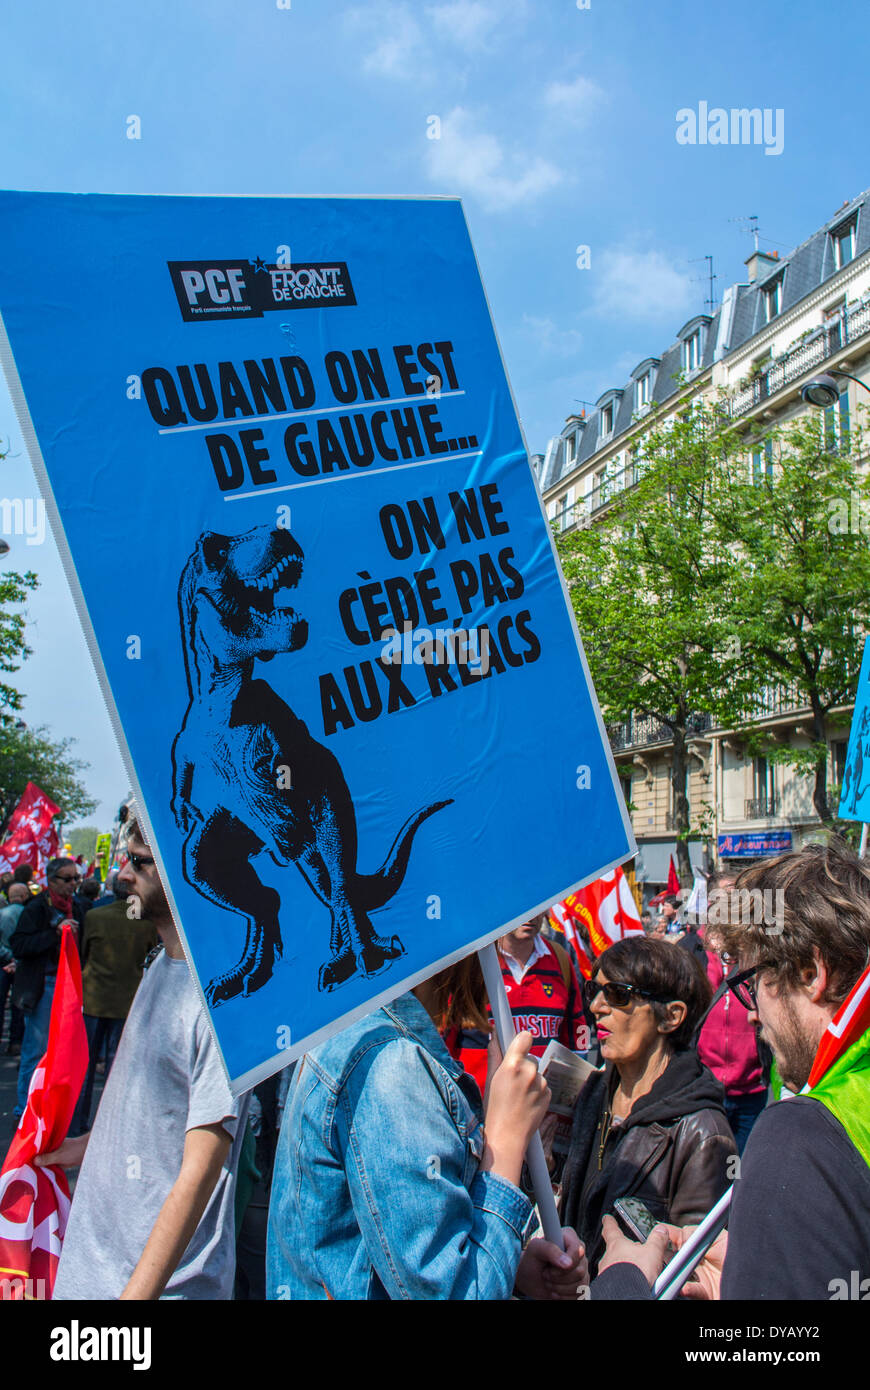 Parigi, Francia, sinistra politica manifestazione contro austerità economica dal governo socialista, Front de Gauche, Partito Comunista Francese poster di protesta Foto Stock